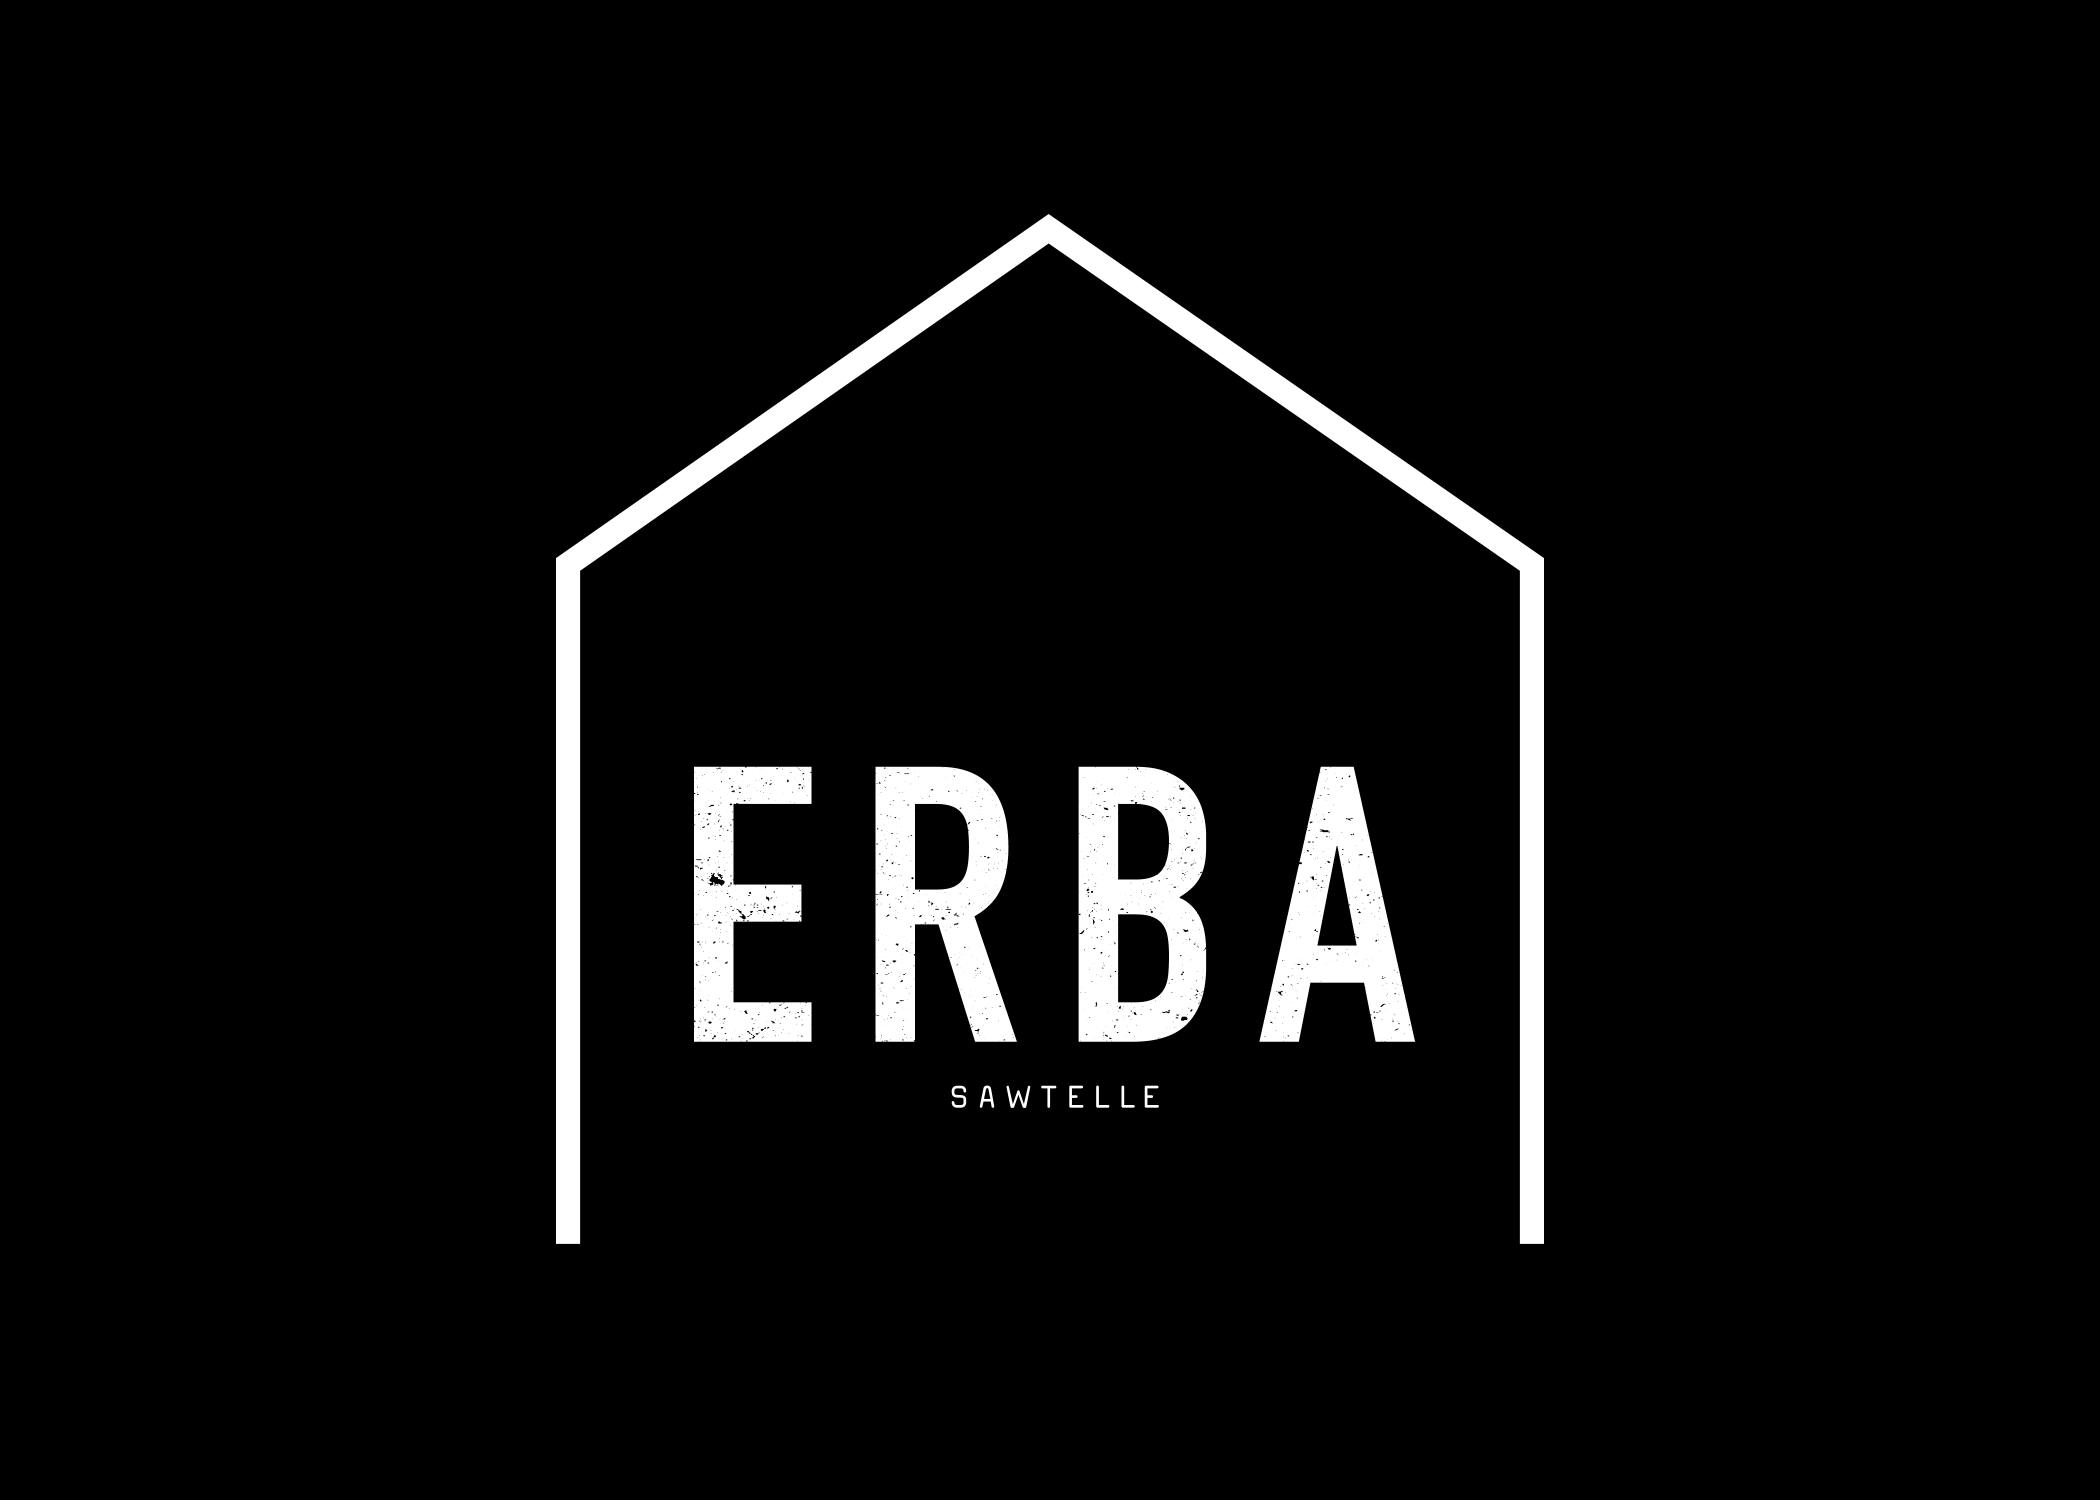 ERBA Sawtelle logo